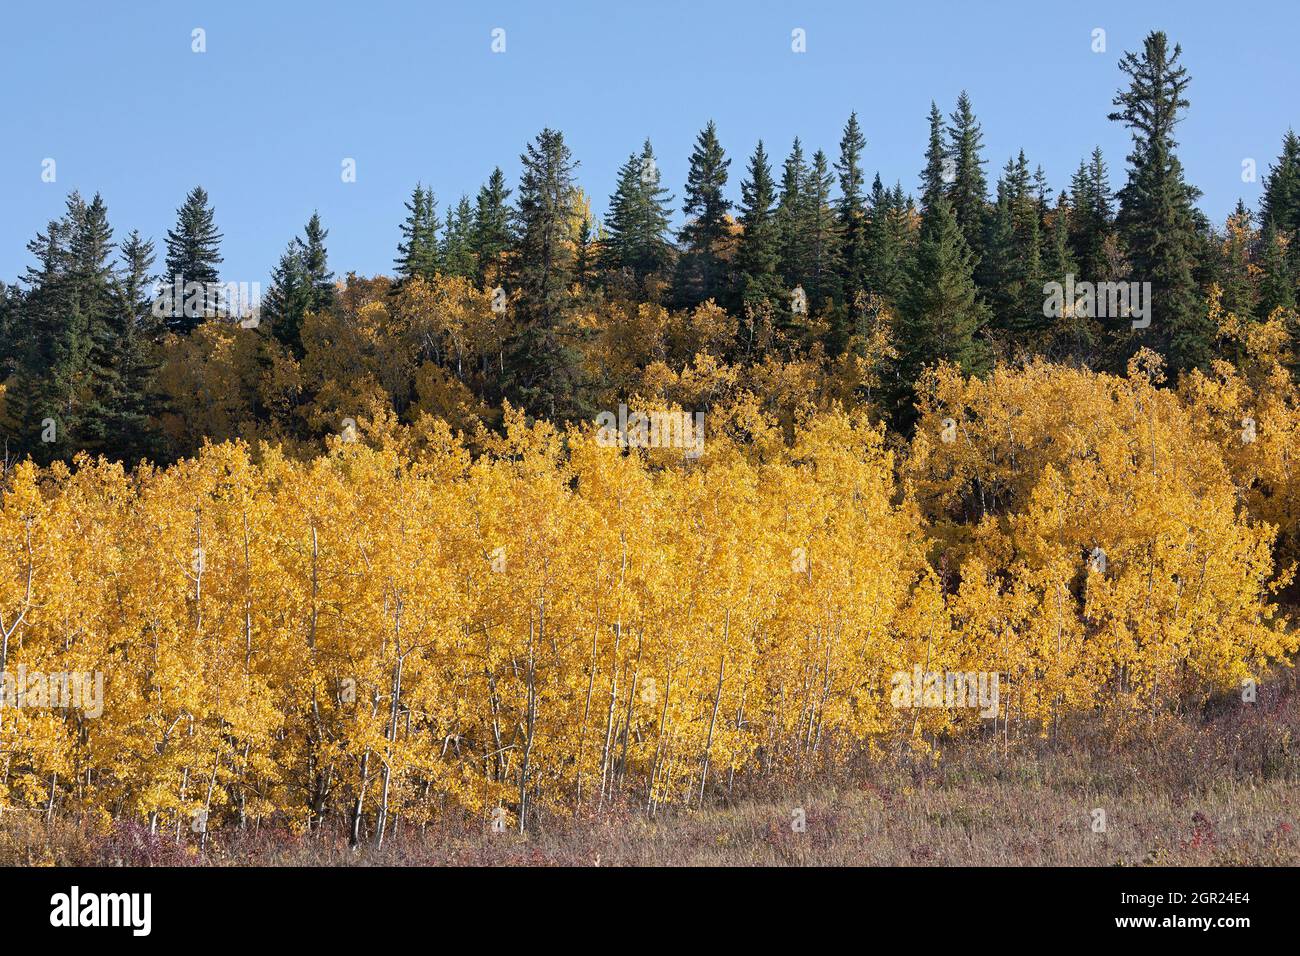 L'un des peuplements les plus à l'est de la forêt de Douglas Fir au Canada, avec l'épinette blanche et les Aspen tremblants dans le feuillage d'automne, Edworthy Park, Calgary Banque D'Images